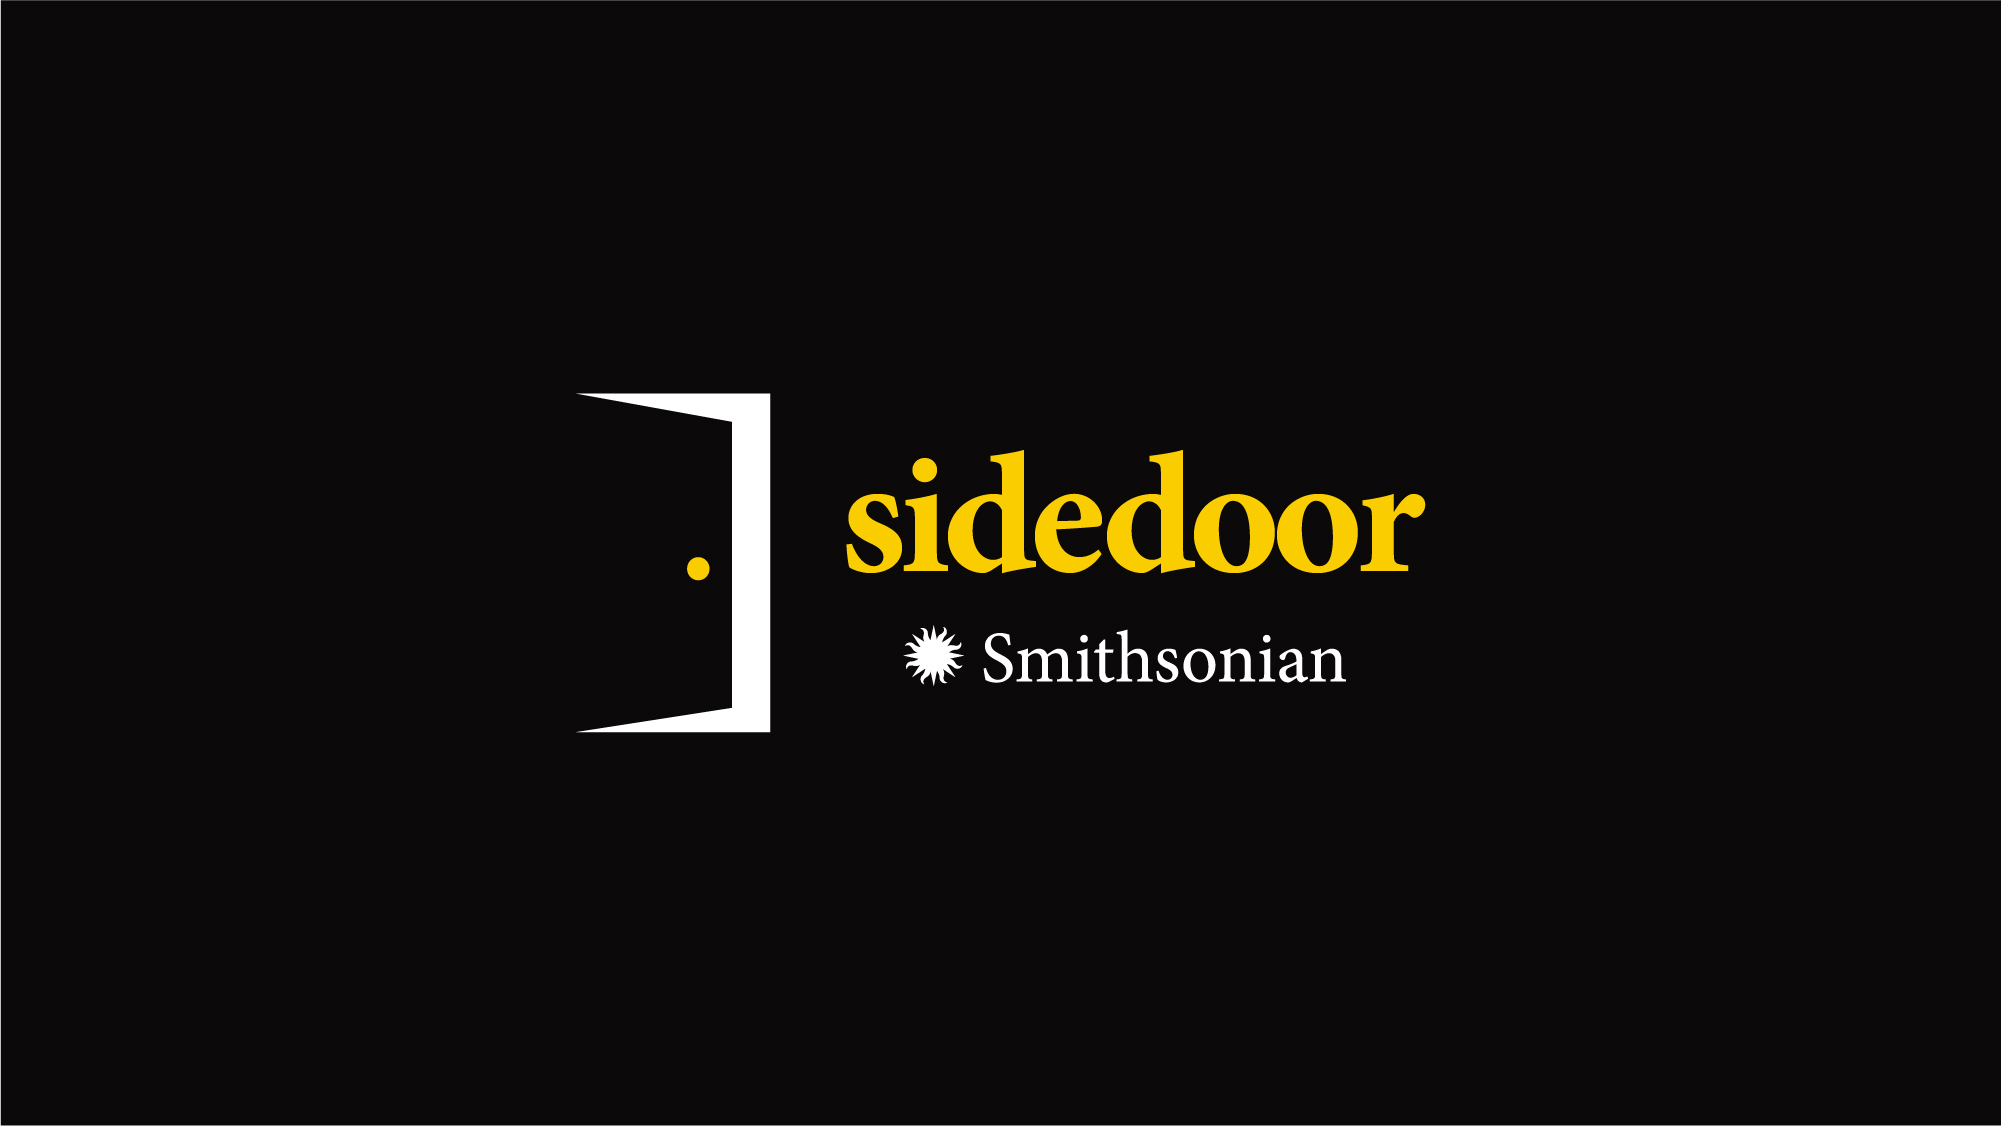 sidedoor-11